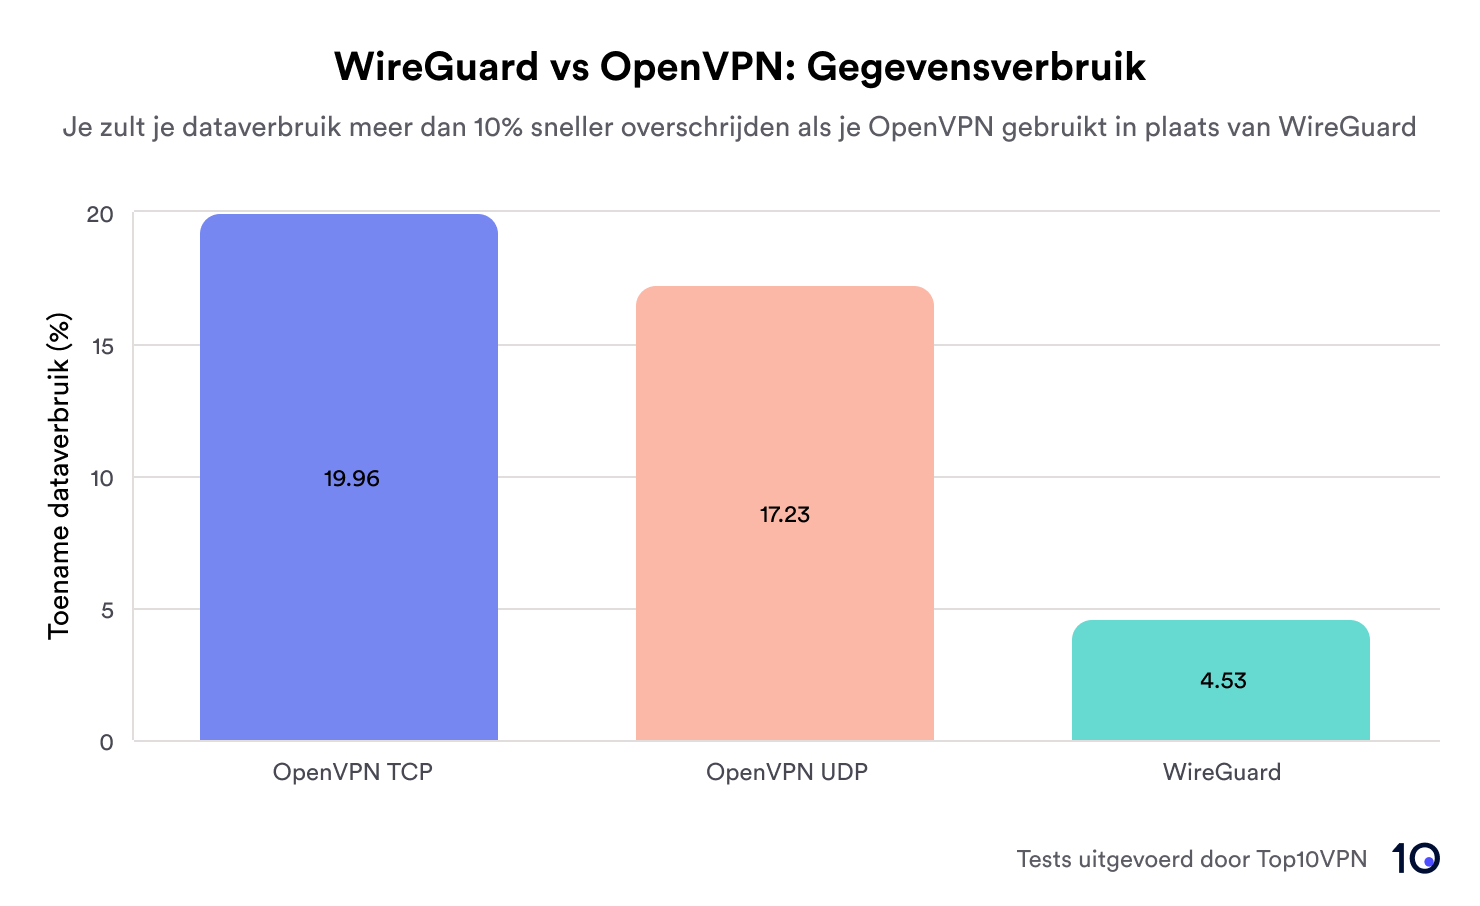 staafdiagram met het dataverbruik van OpenVPN TCP, OpenVPN UDP en WireGuard